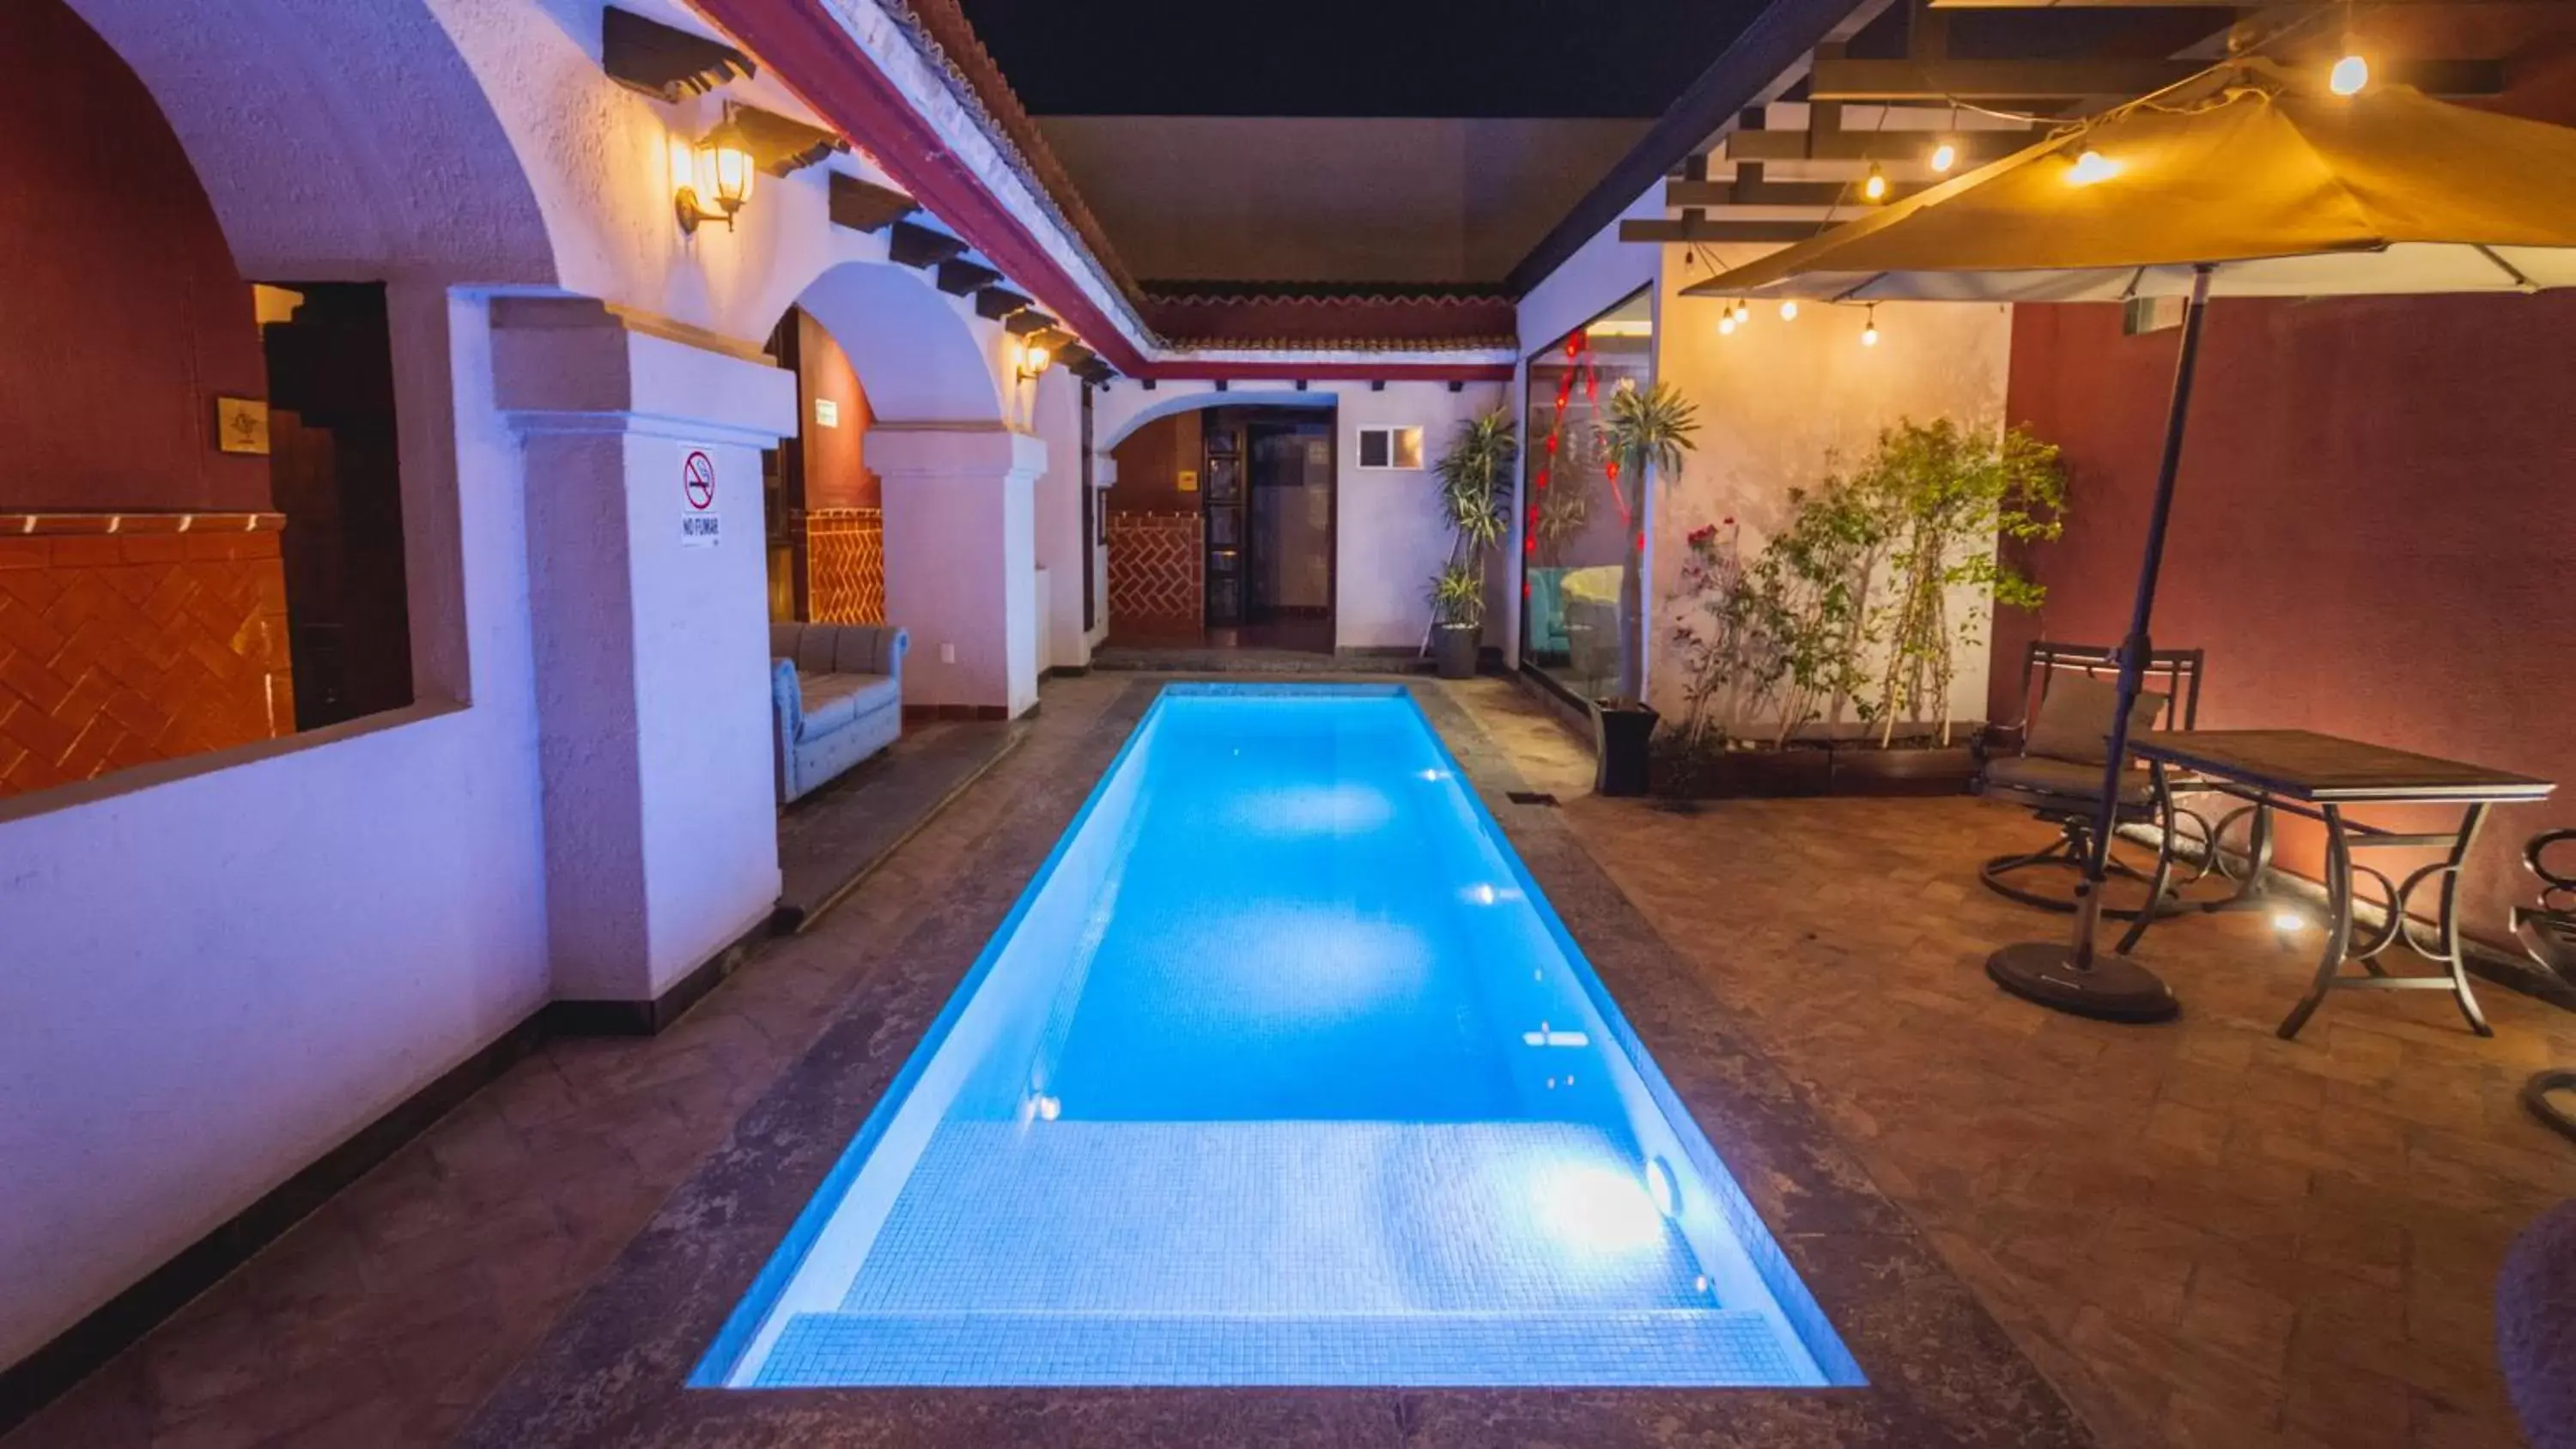 Swimming Pool in Casa Eva Hotel Boutique & Spa